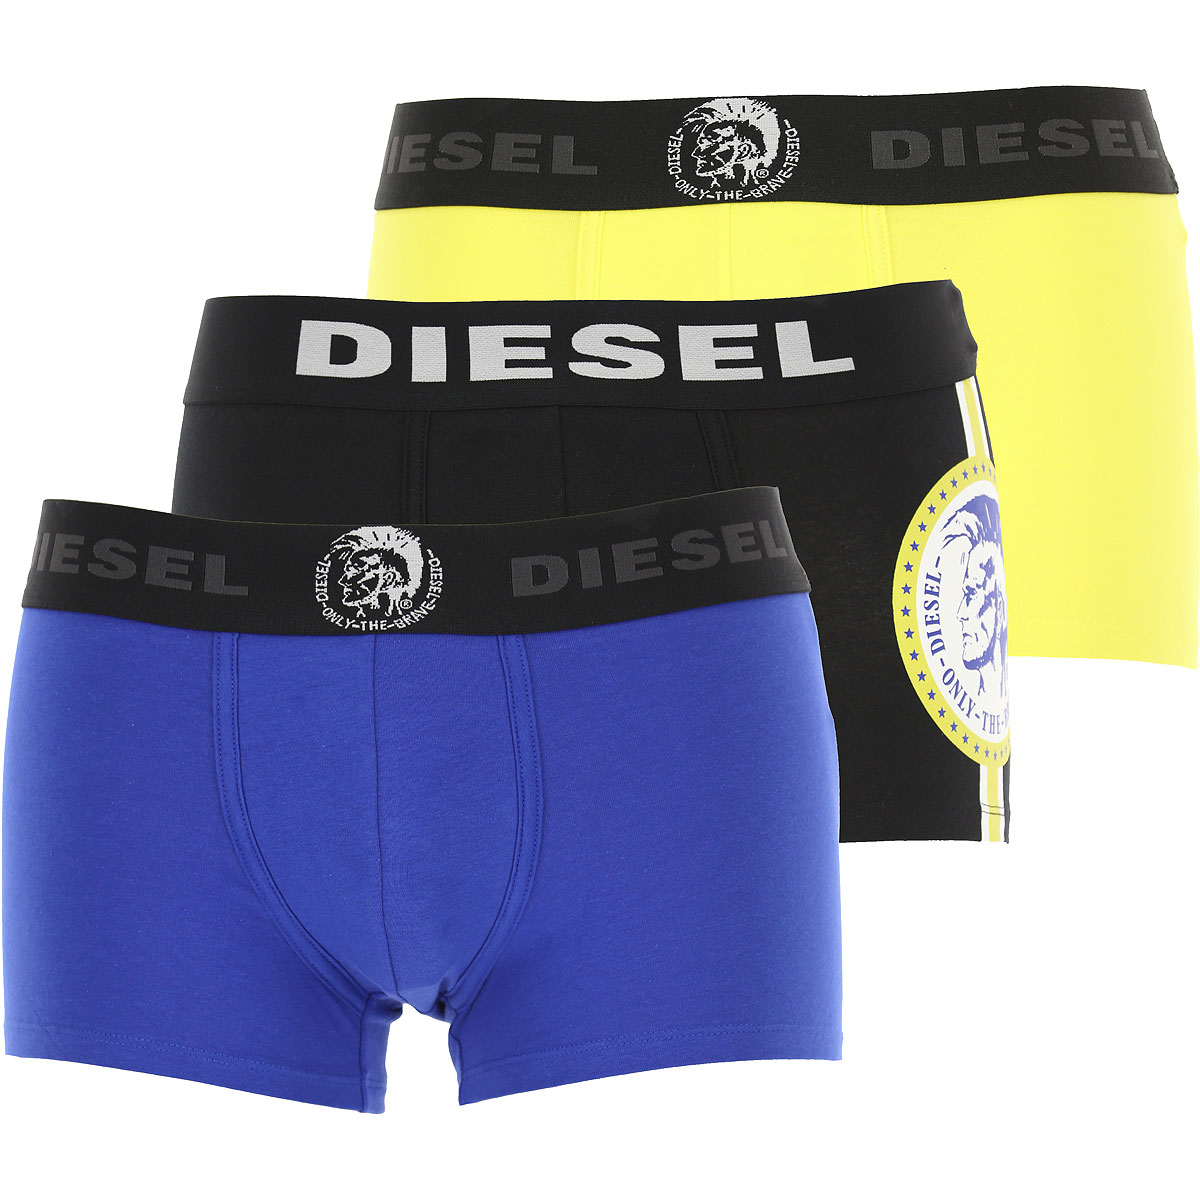 Diesel Boxer Shorts für Herren, Unterhose, Short, Boxer Günstig im Sale, 3 Pack, Bluette, Baumwolle, 2017, L M S